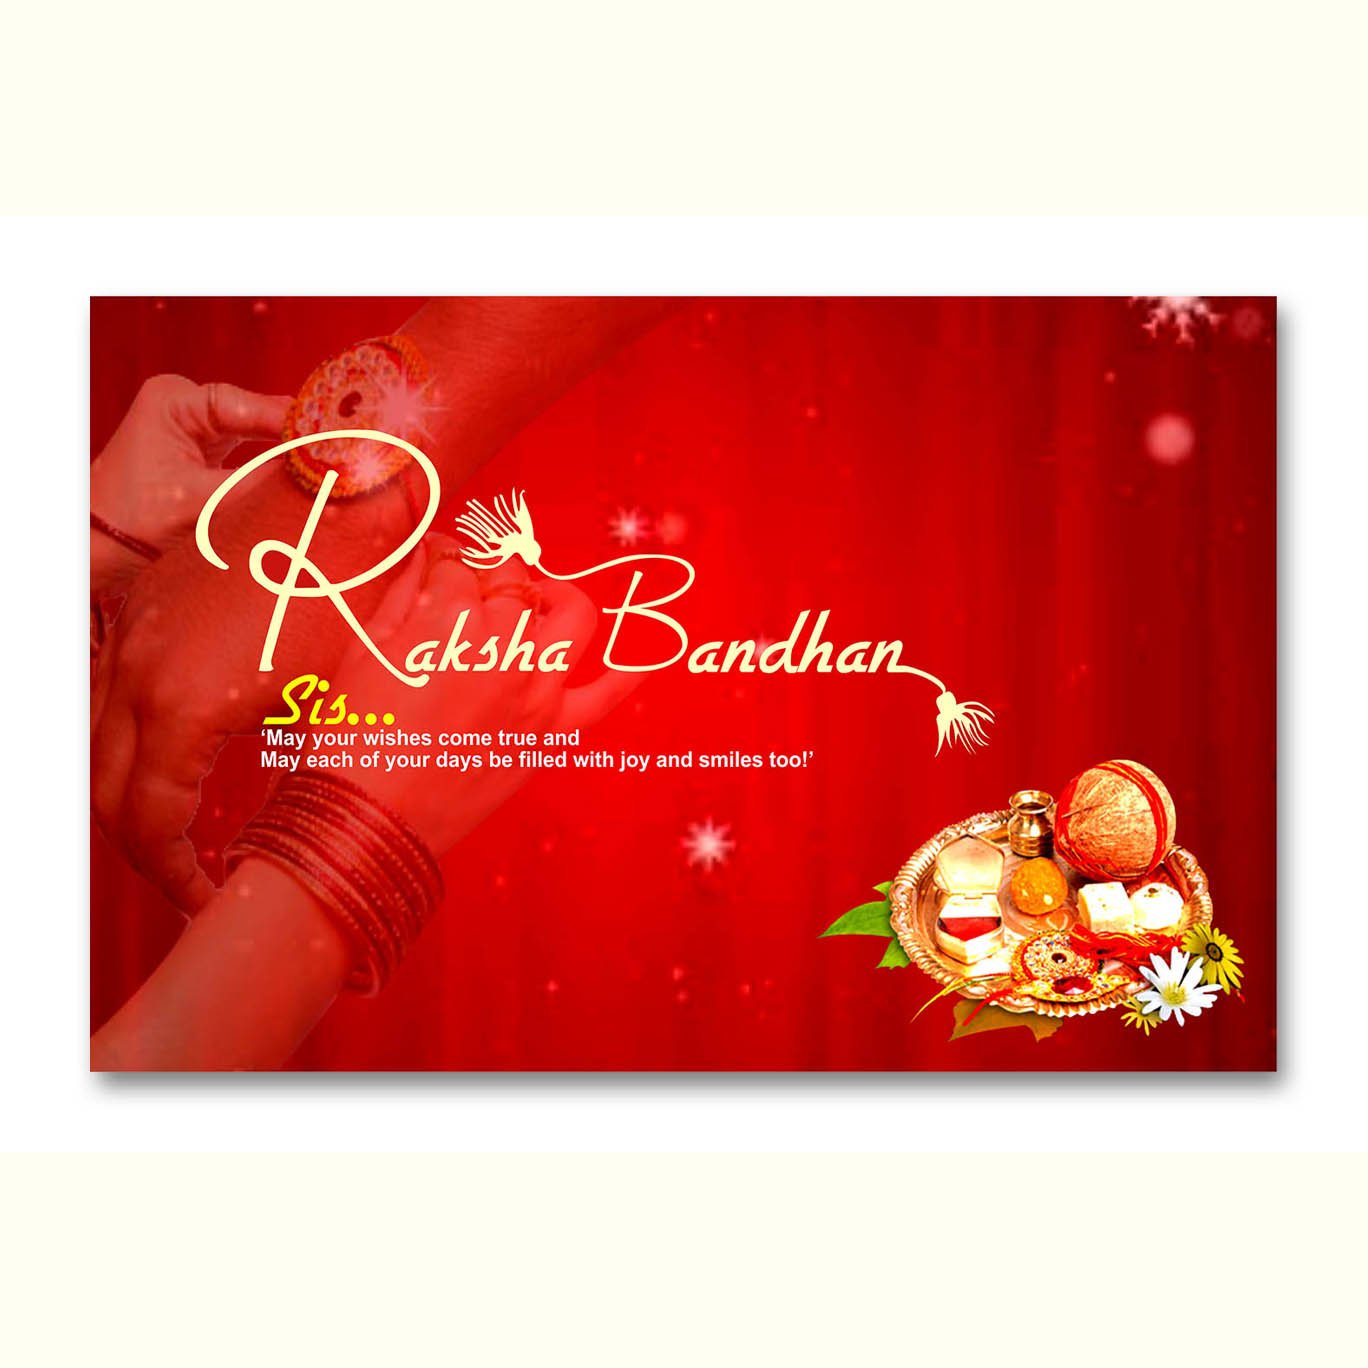 Happy Rakshabandhan